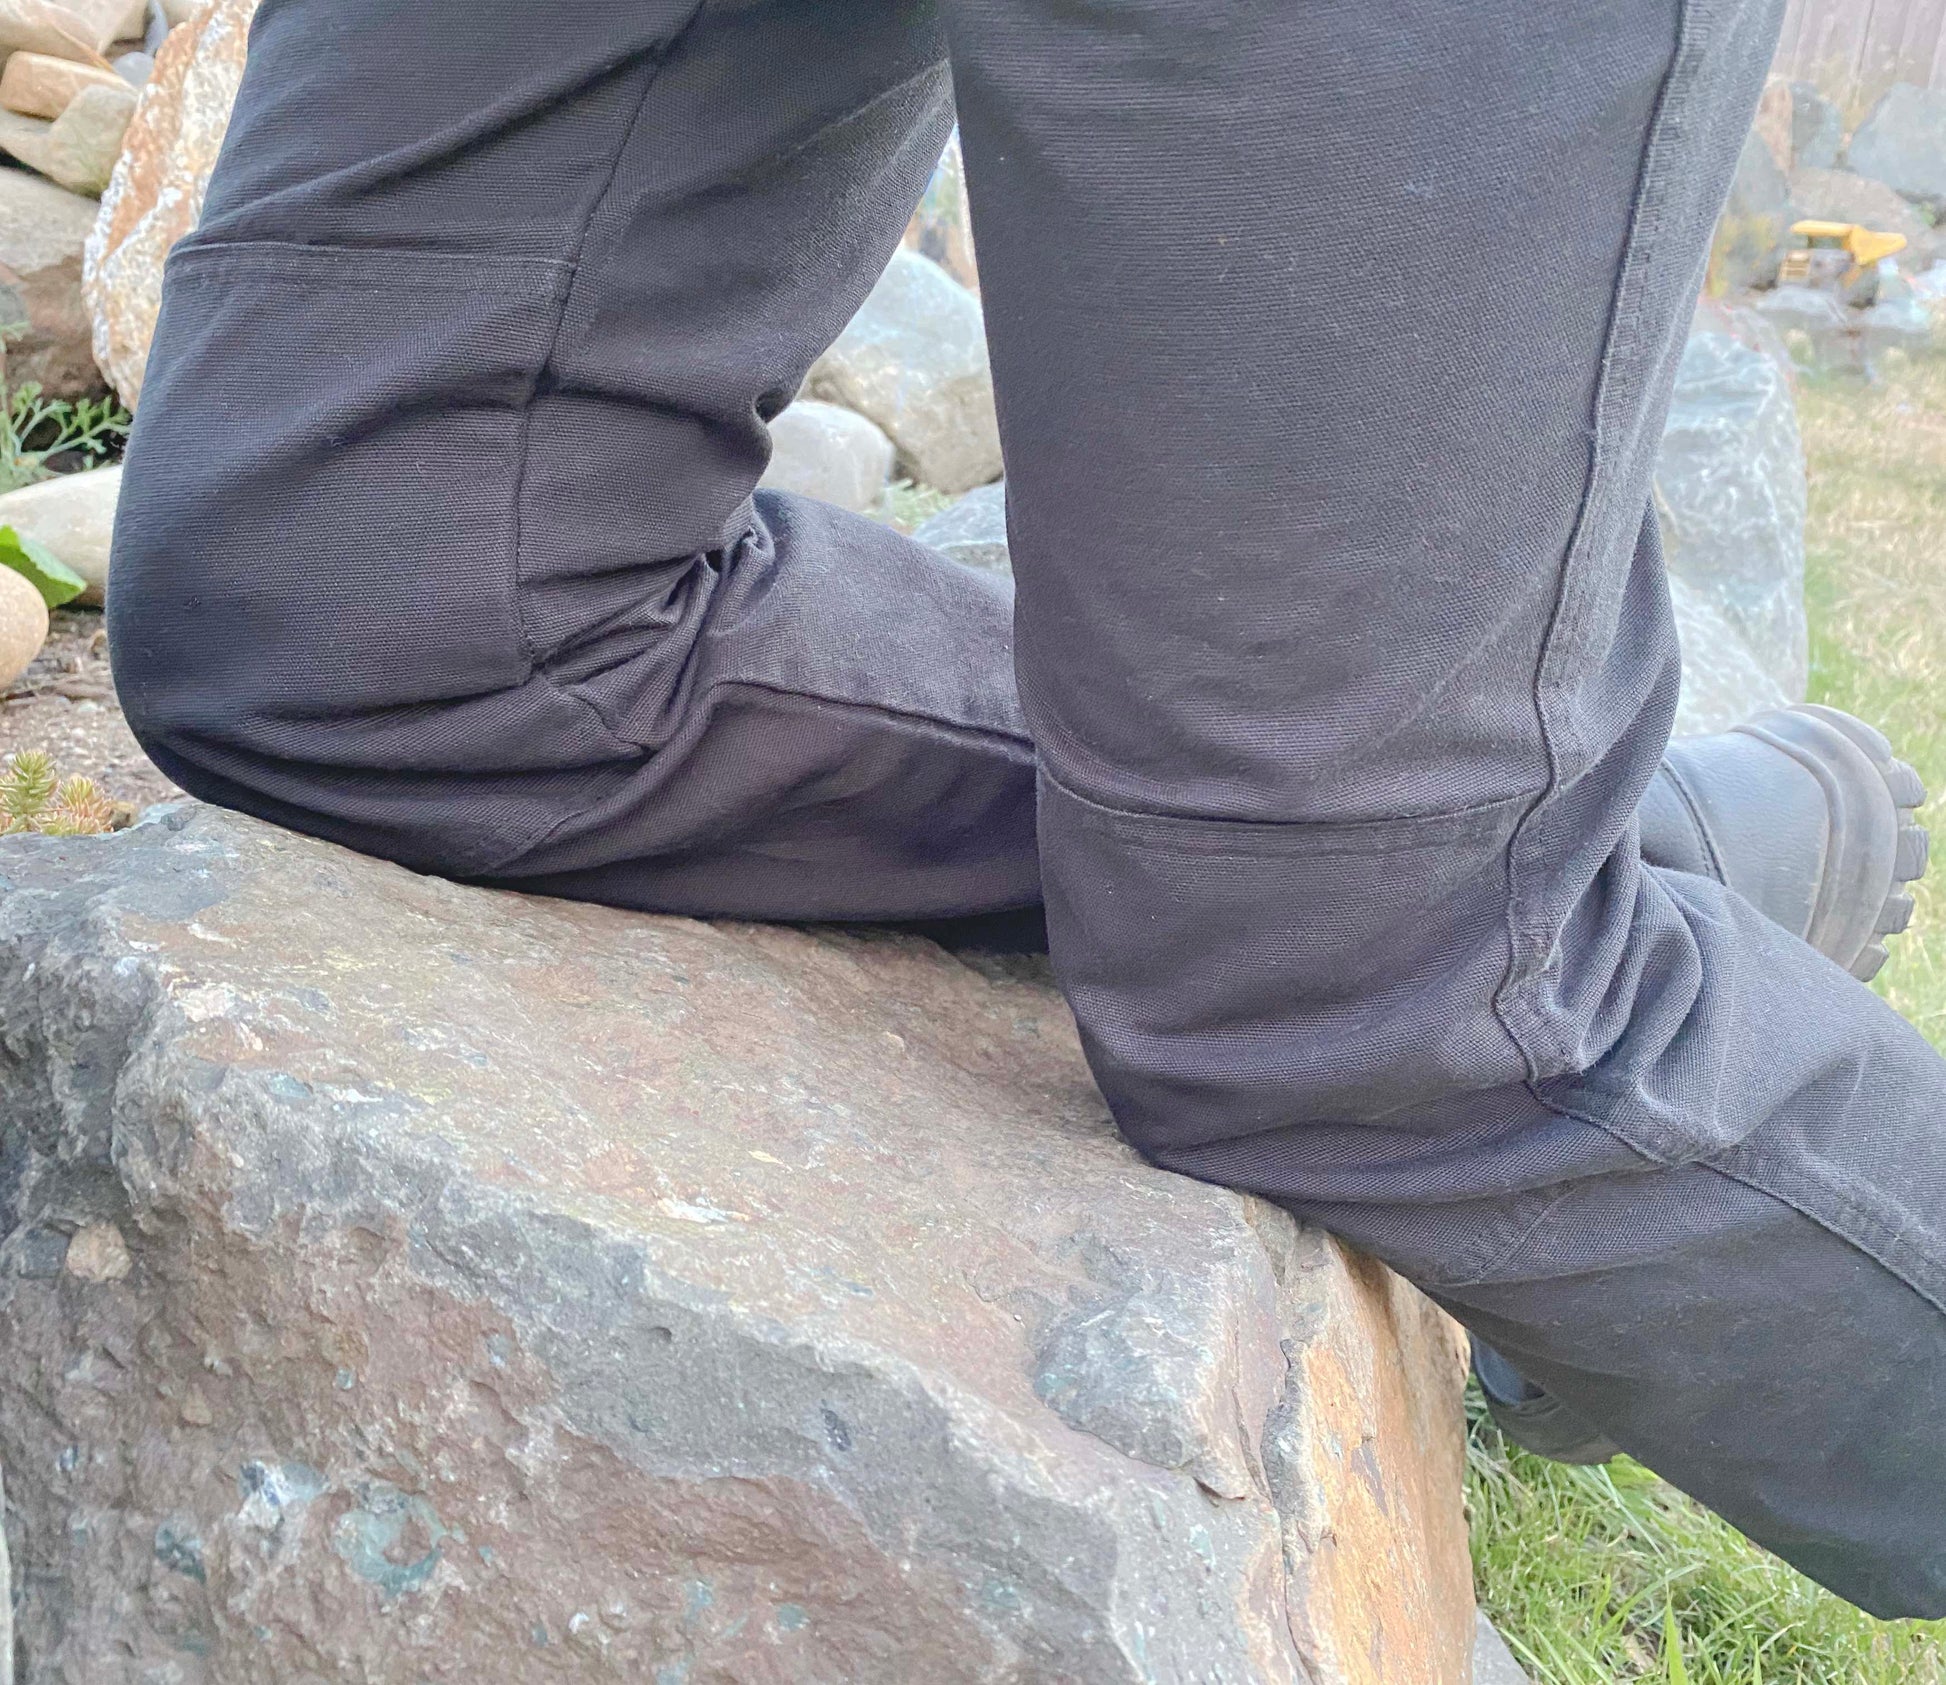 Tough & Durable pants with Double Knees - Brainchild Designs